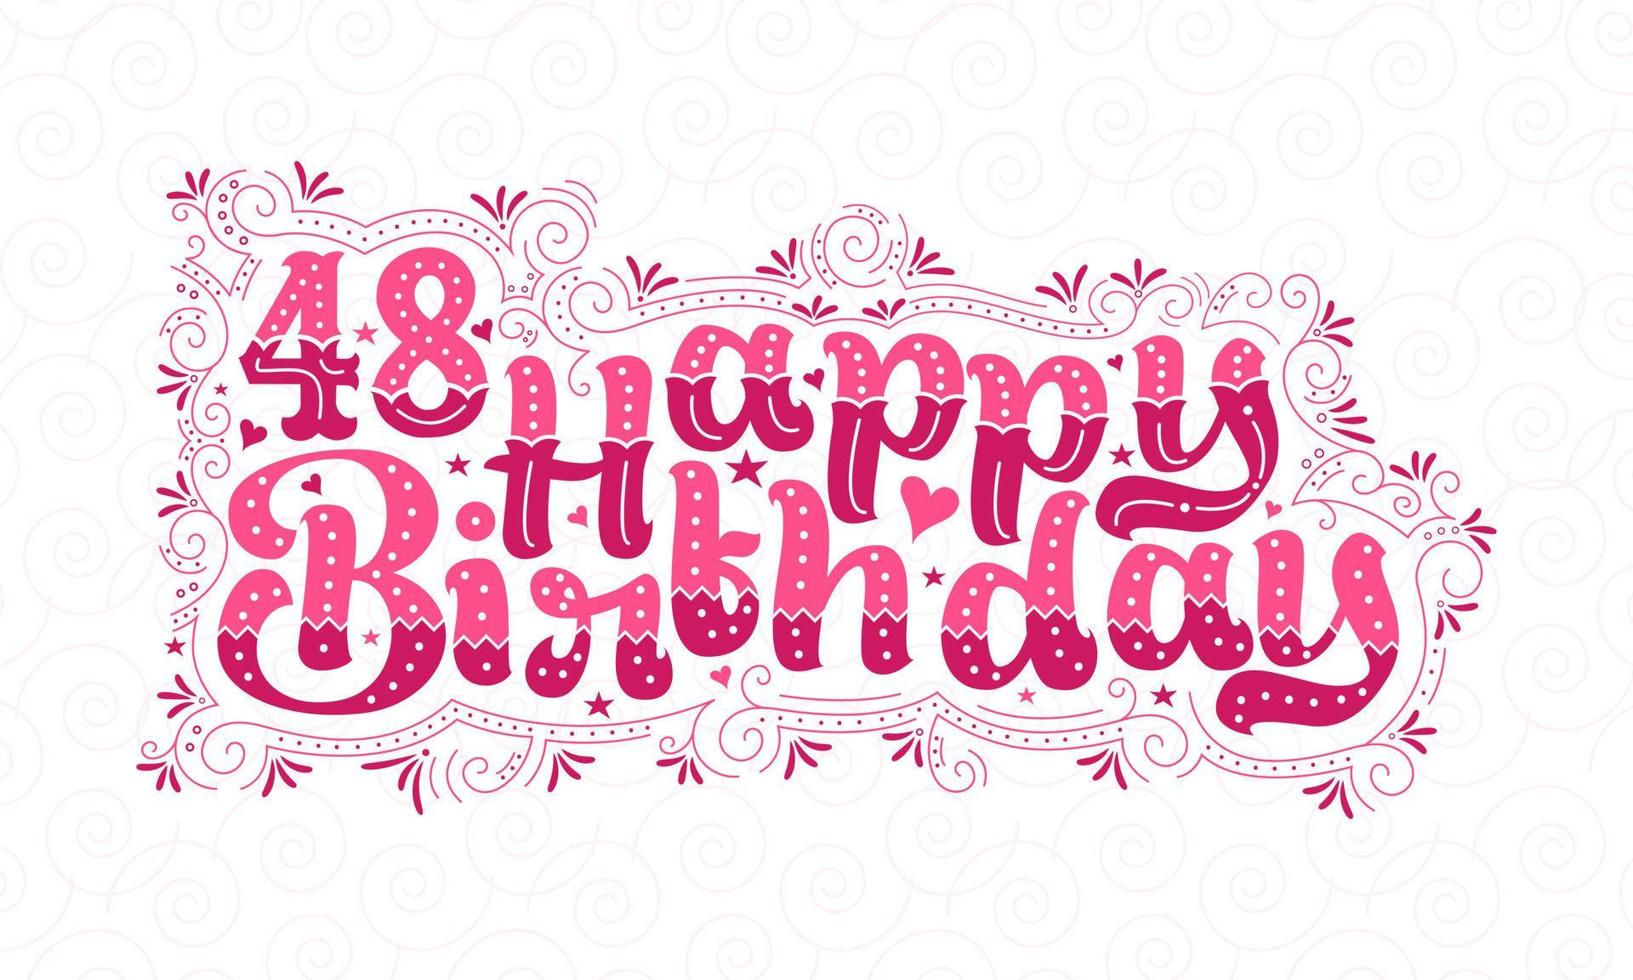 48 letras de feliz cumpleaños, hermoso diseño tipográfico de cumpleaños de 48 años con puntos rosas, líneas y hojas. vector